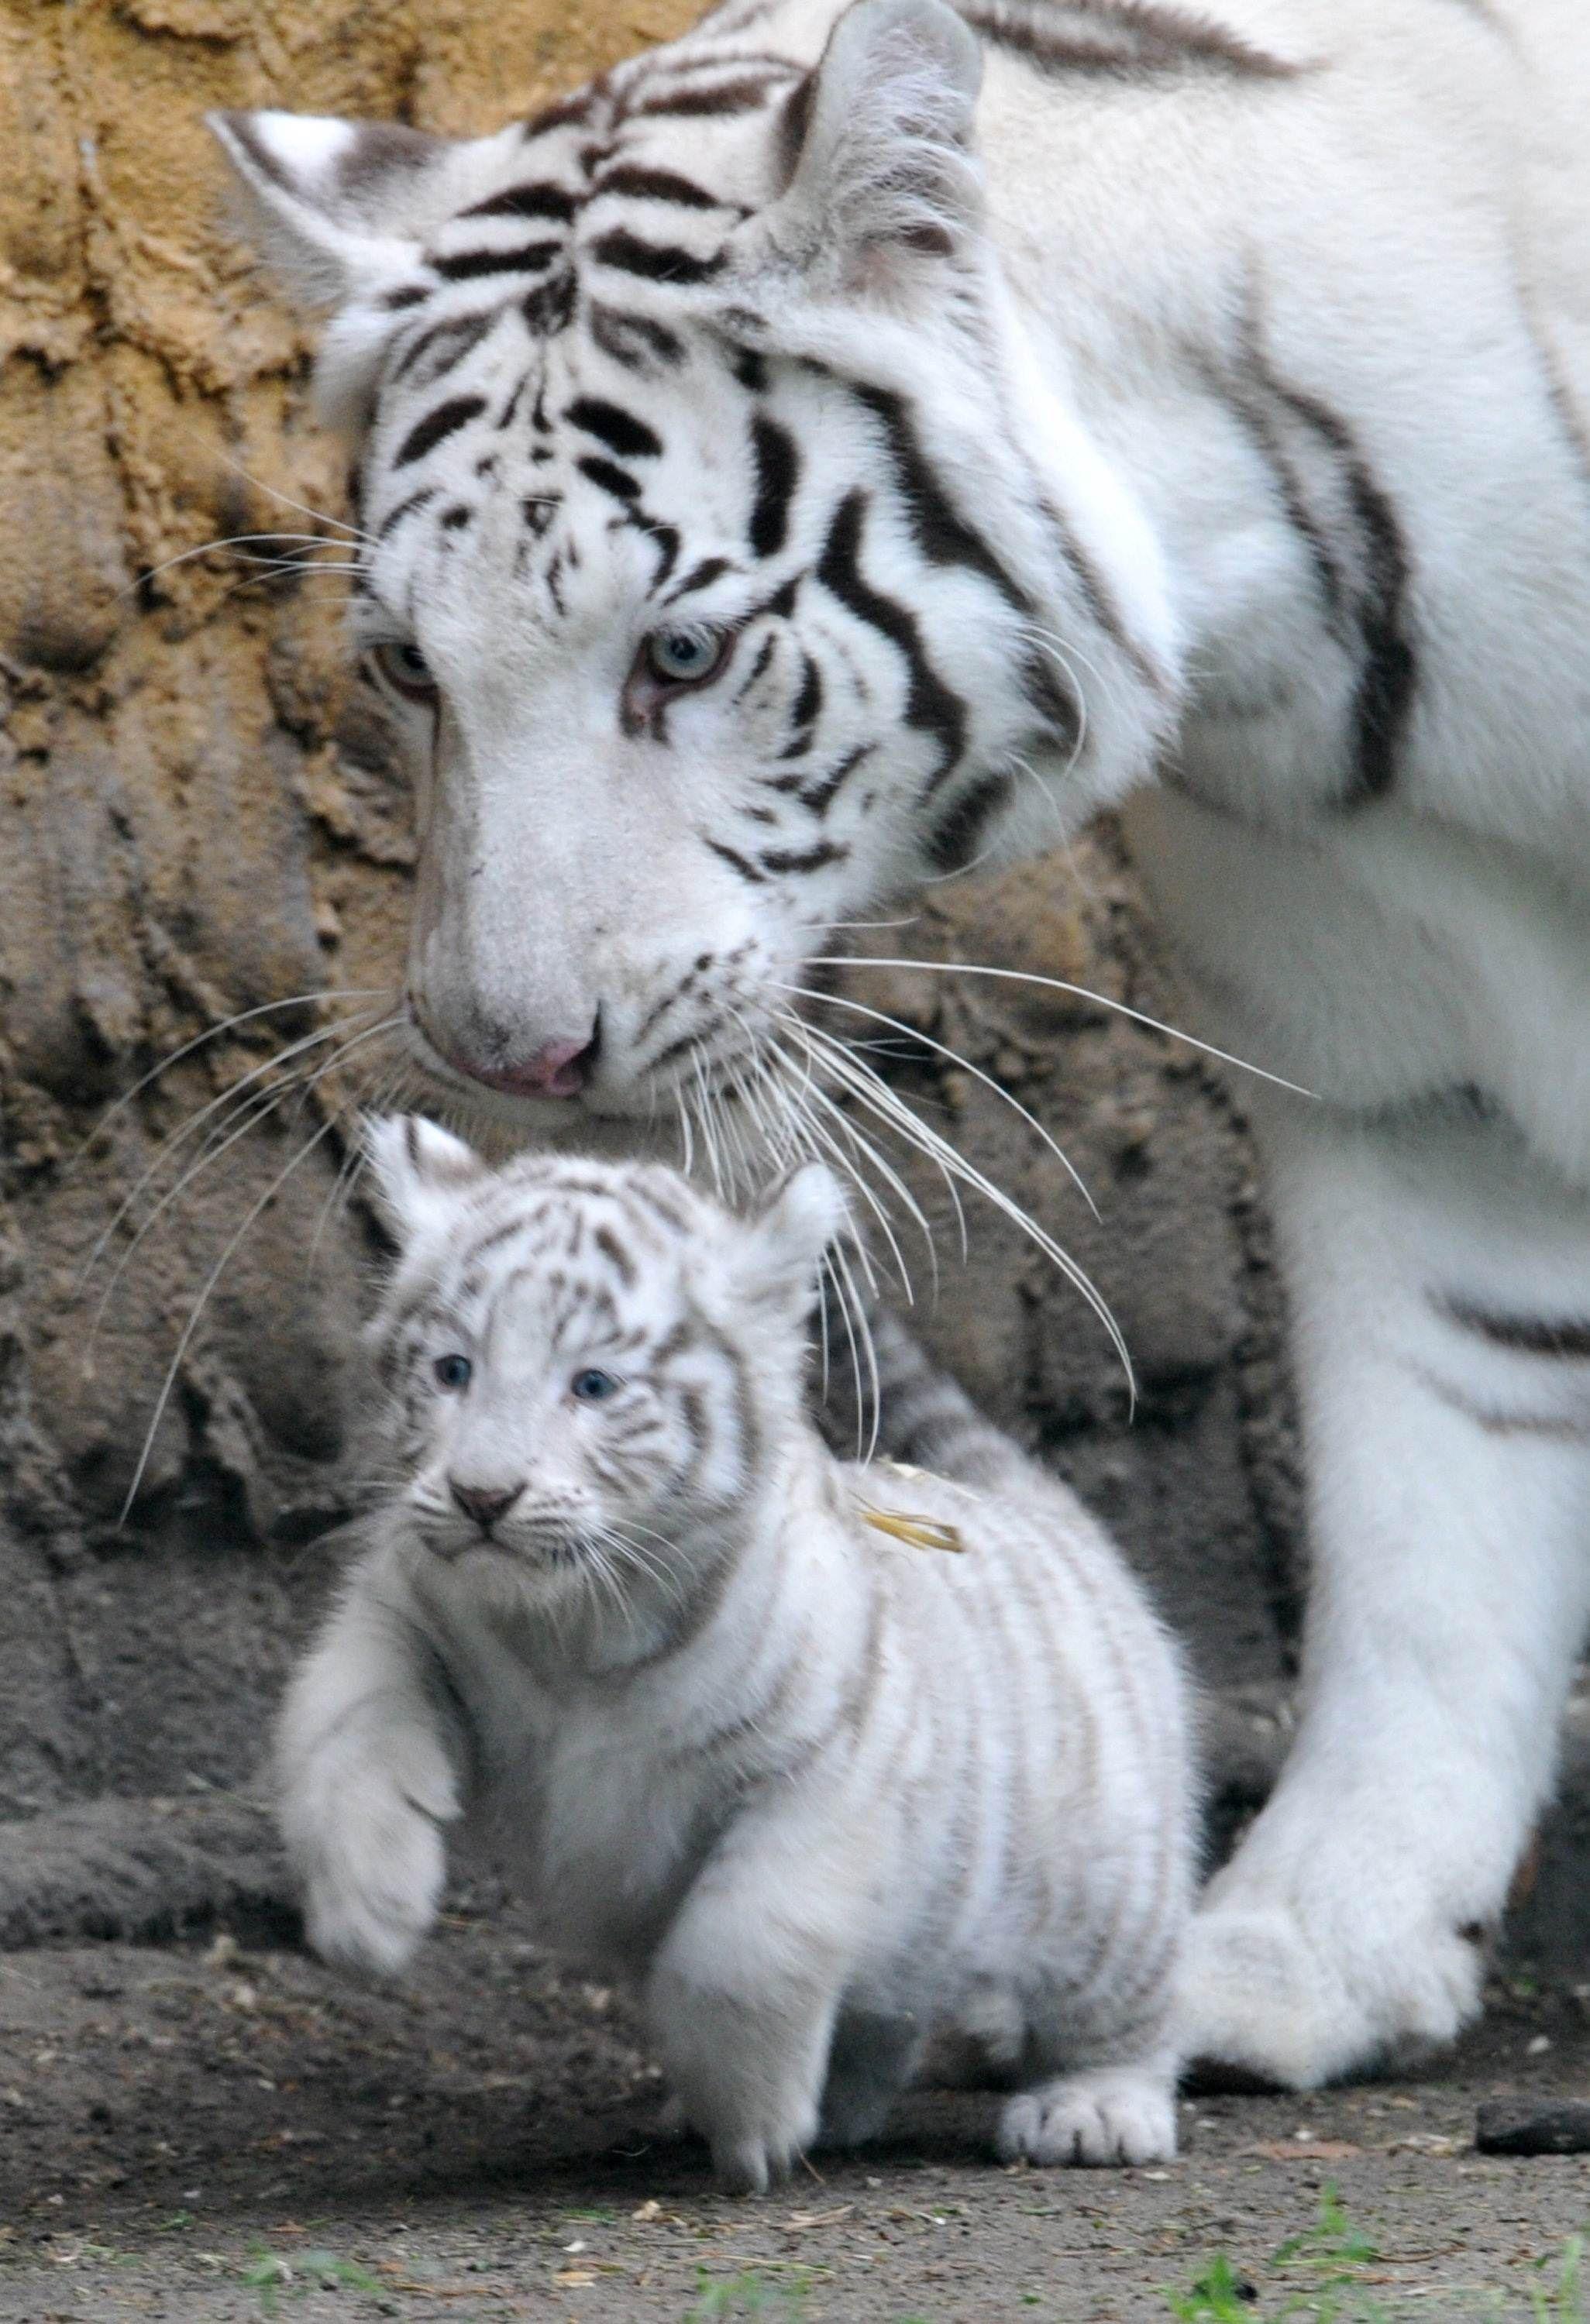 Cute Tiger Cubs. Cutetees. Cubs wallpaper